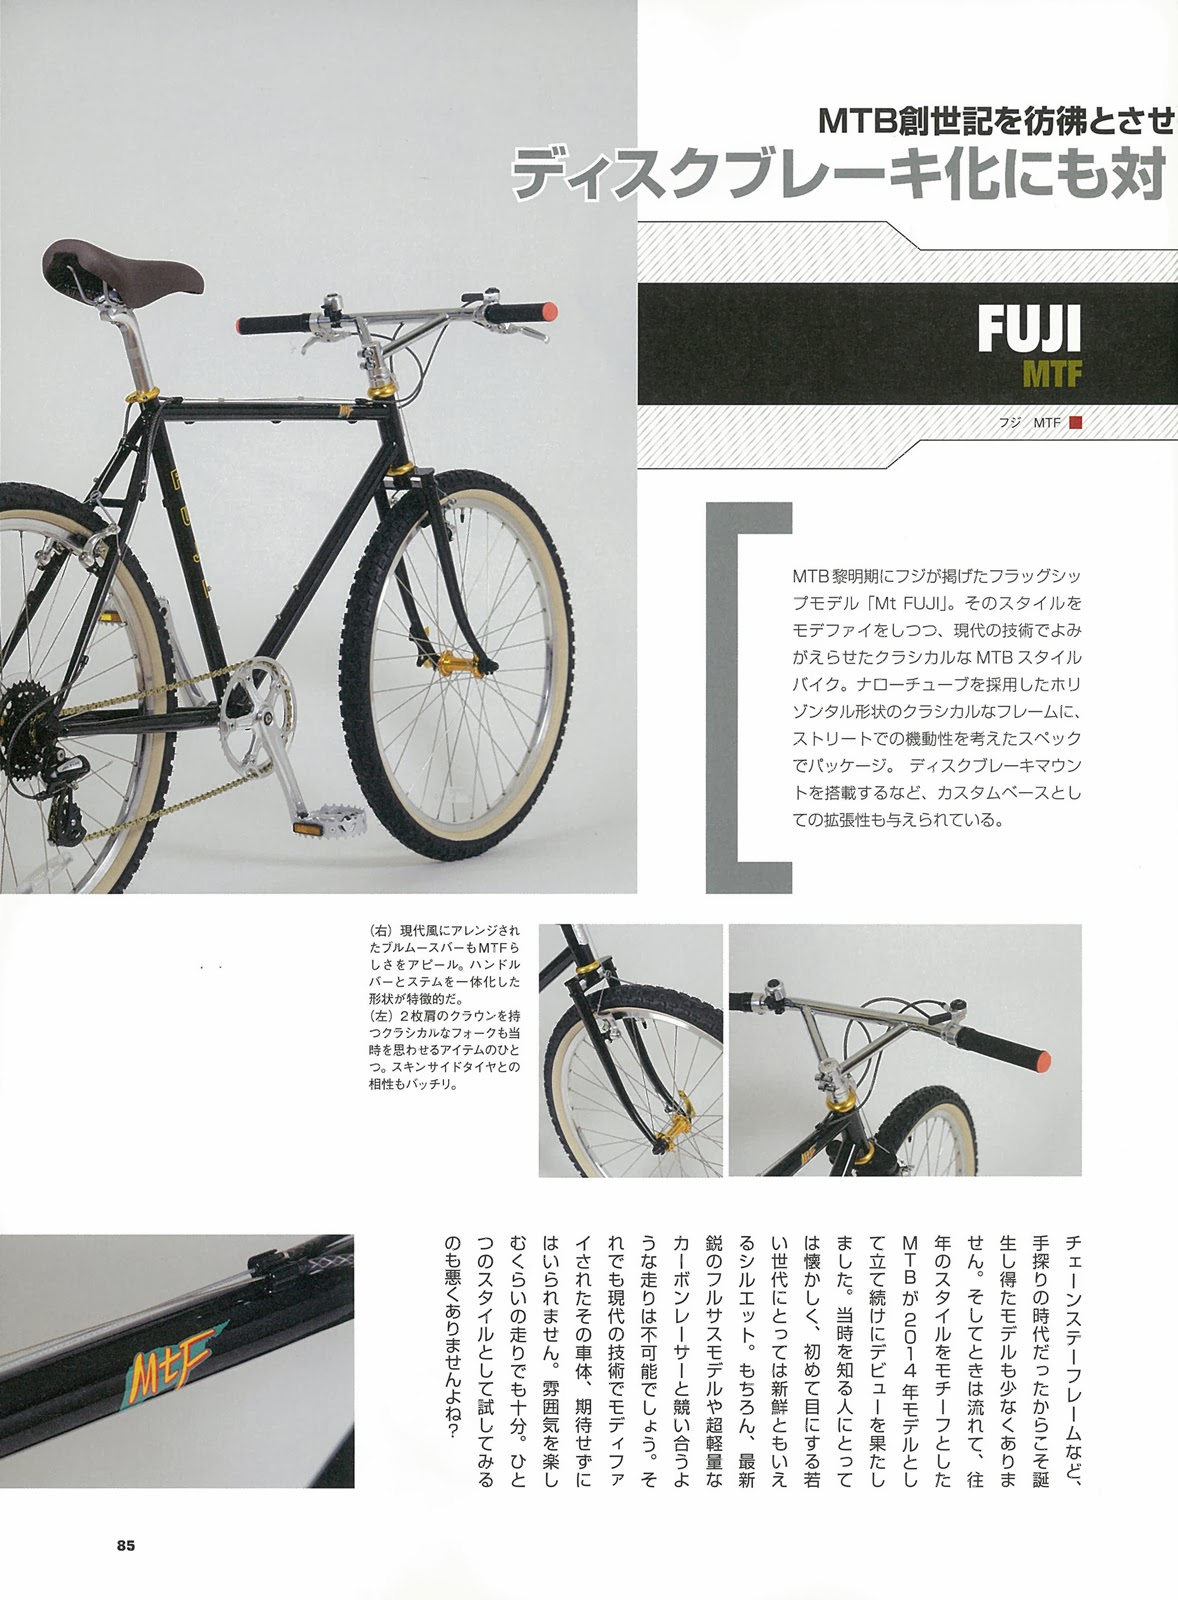 FUJI BIKE JPN Official Blog: 雑誌「MTB日和」掲載のお知らせ